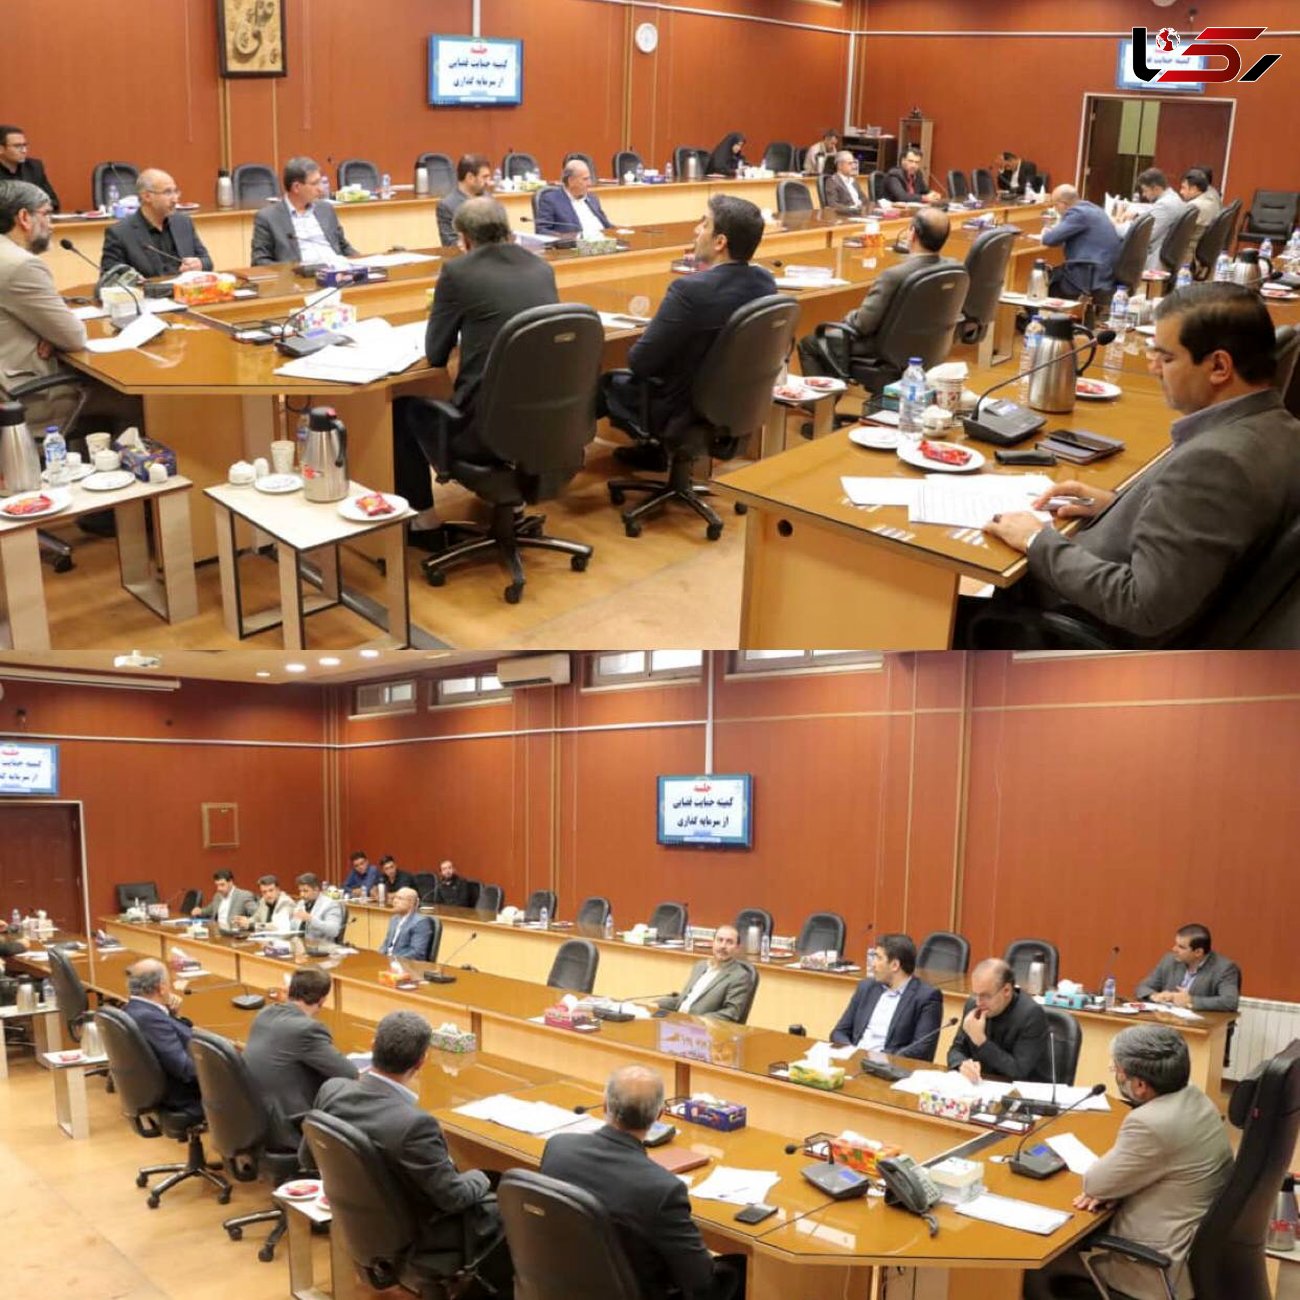 حل مشکل 5 واحد تولیدی در جلسه کمیته حمایت قضایی از سرمایه گذاری آذربایجان غربی